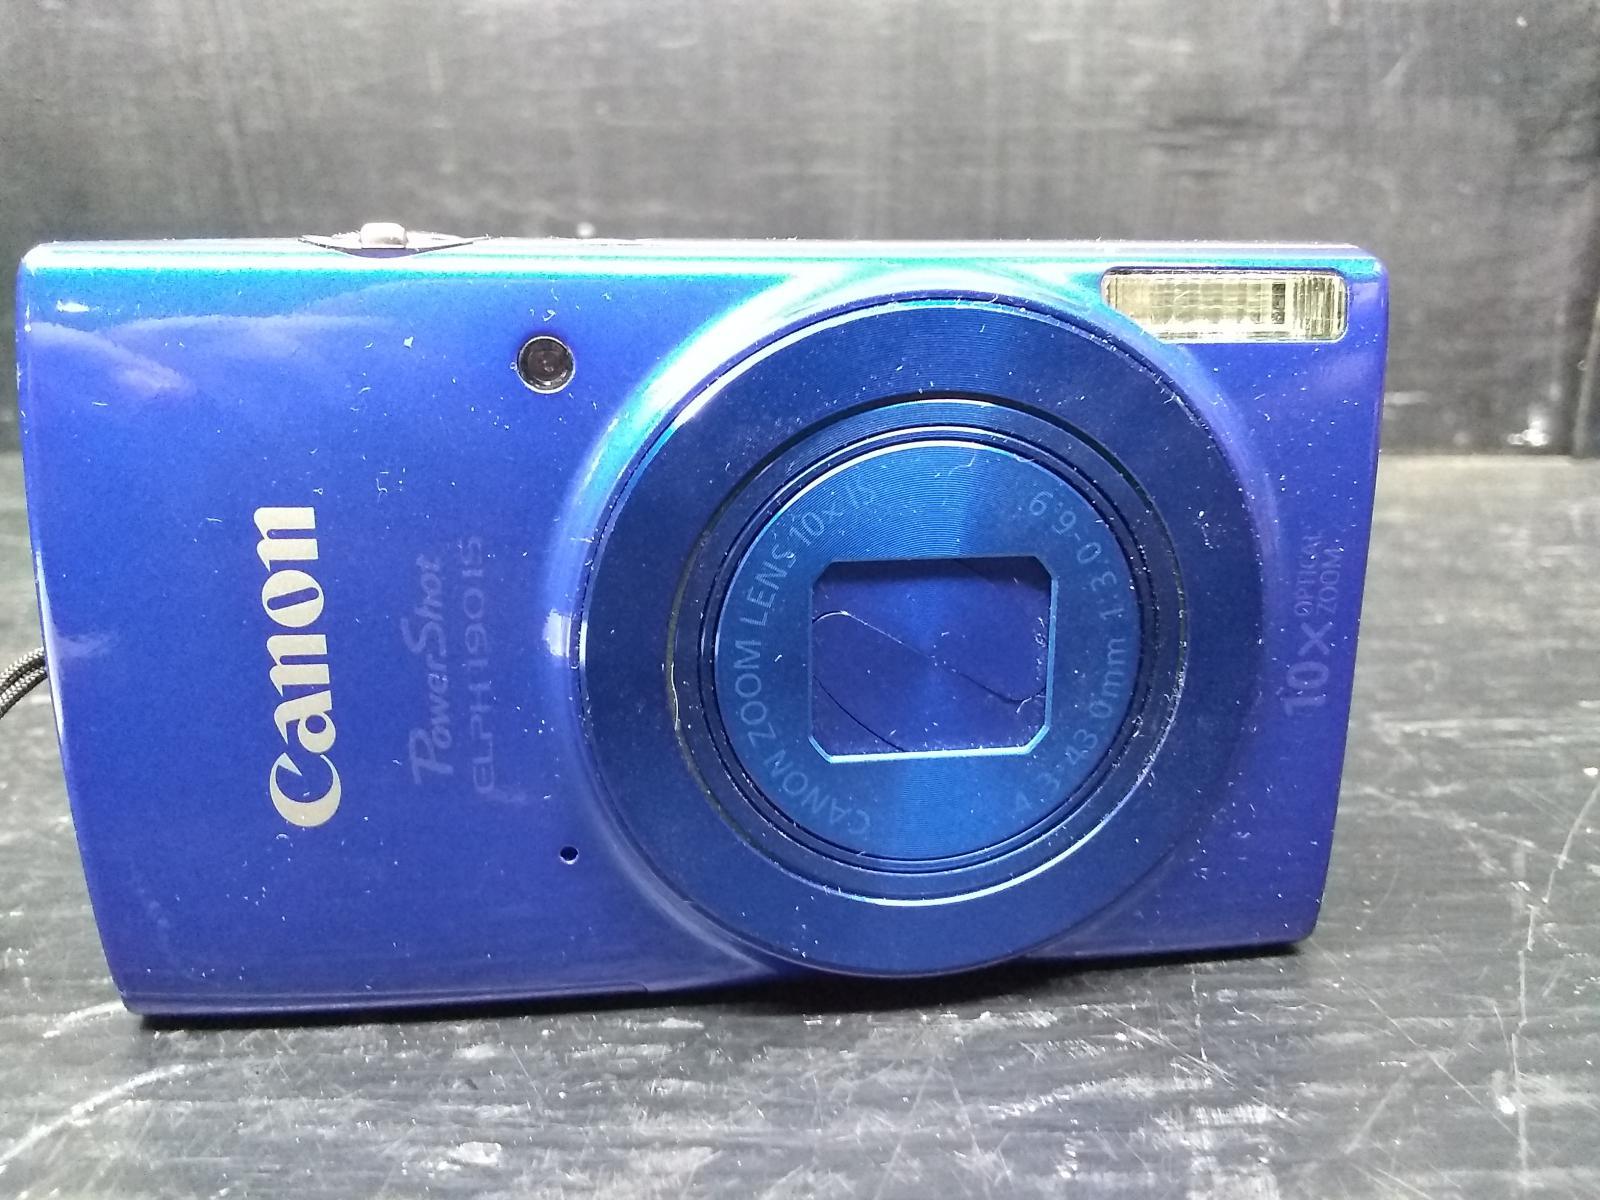 Canon Powershot Ixus 180 Camera with Bag